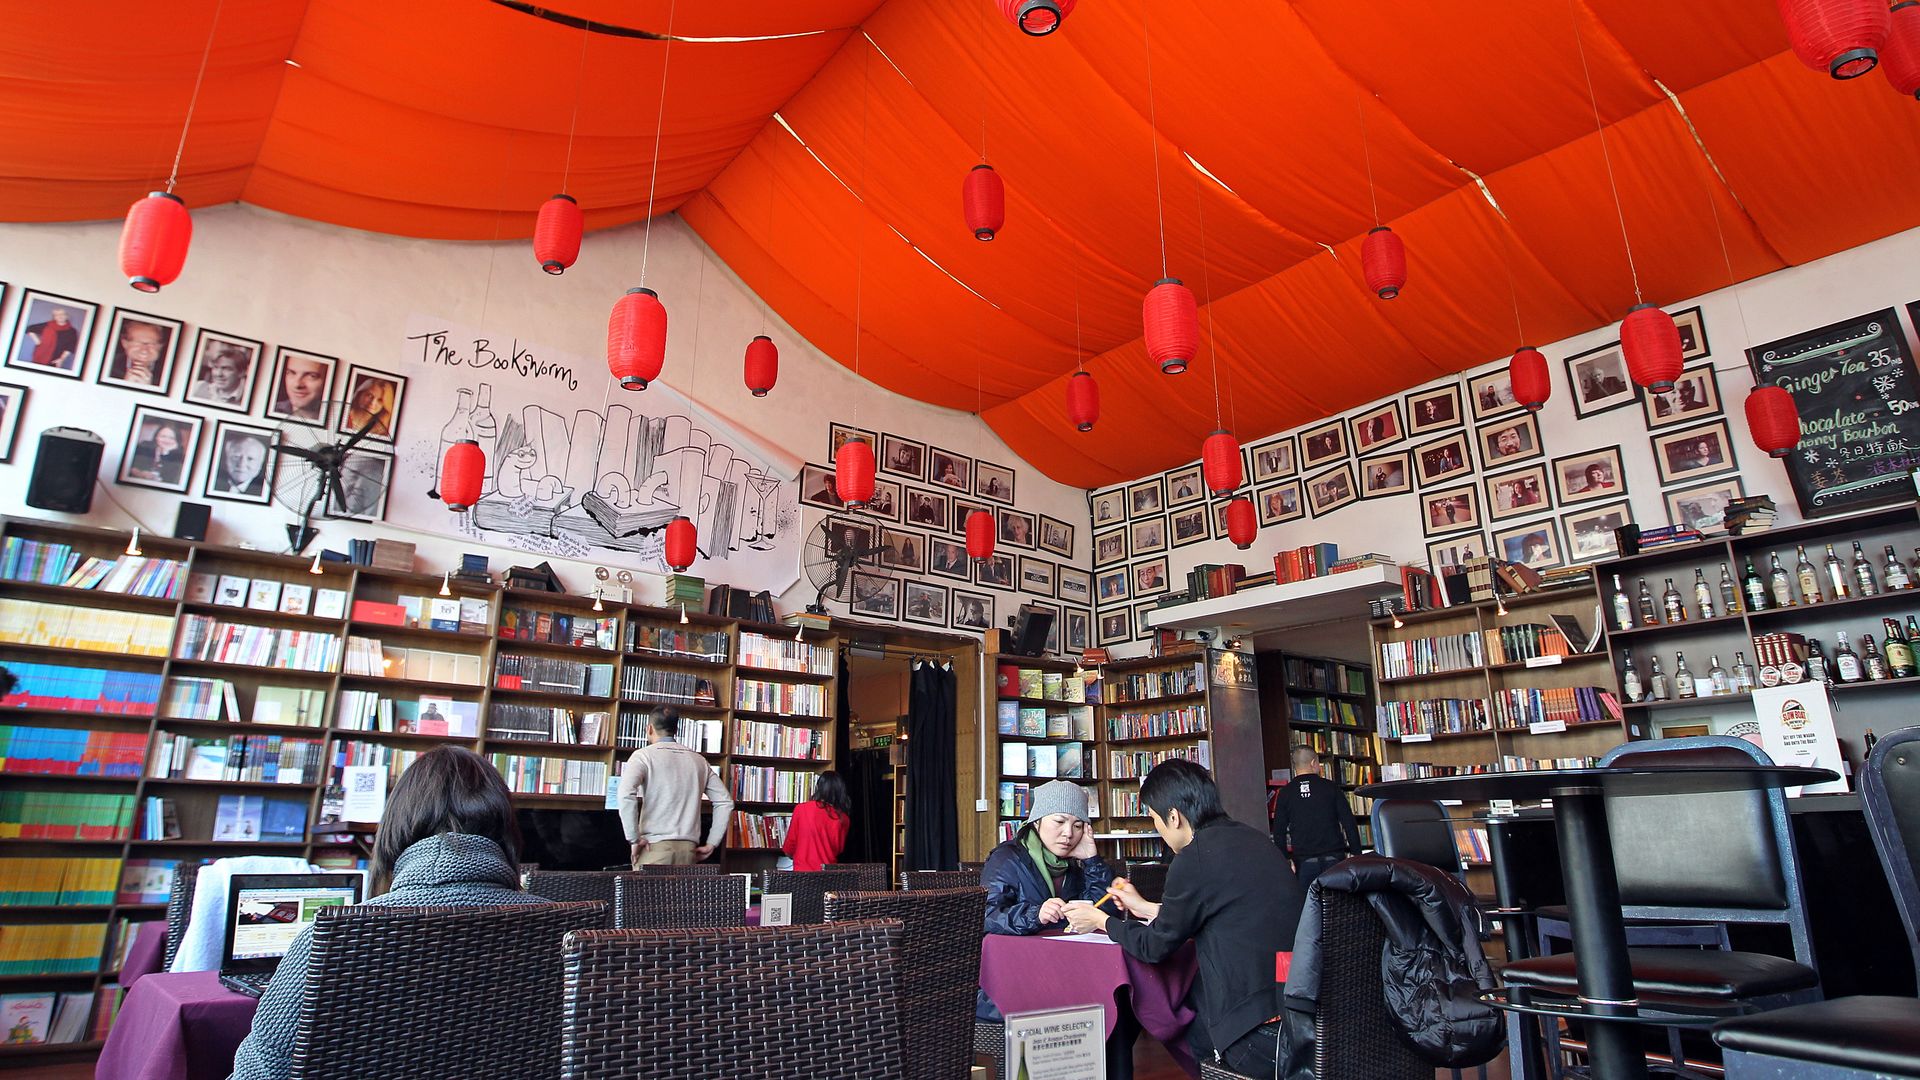 Beijing bookstore the Bookworm